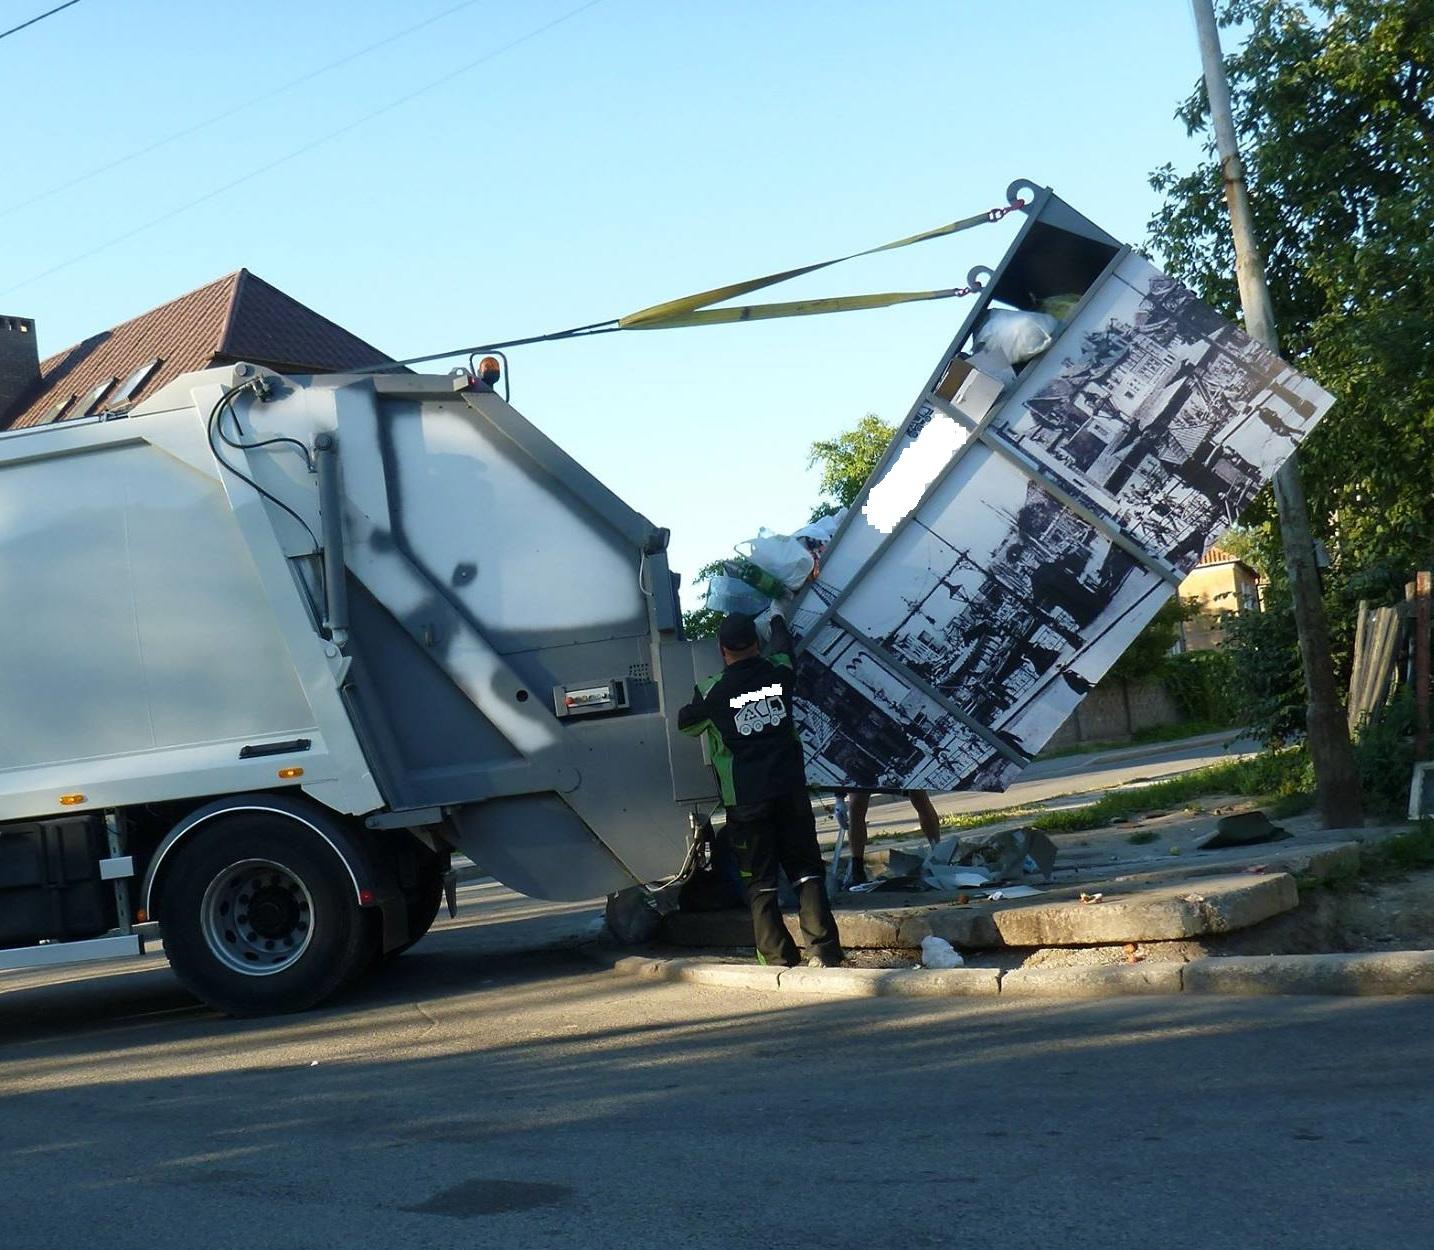 В городе появились мусорные контейнеры с фотографиями Кенигсберга